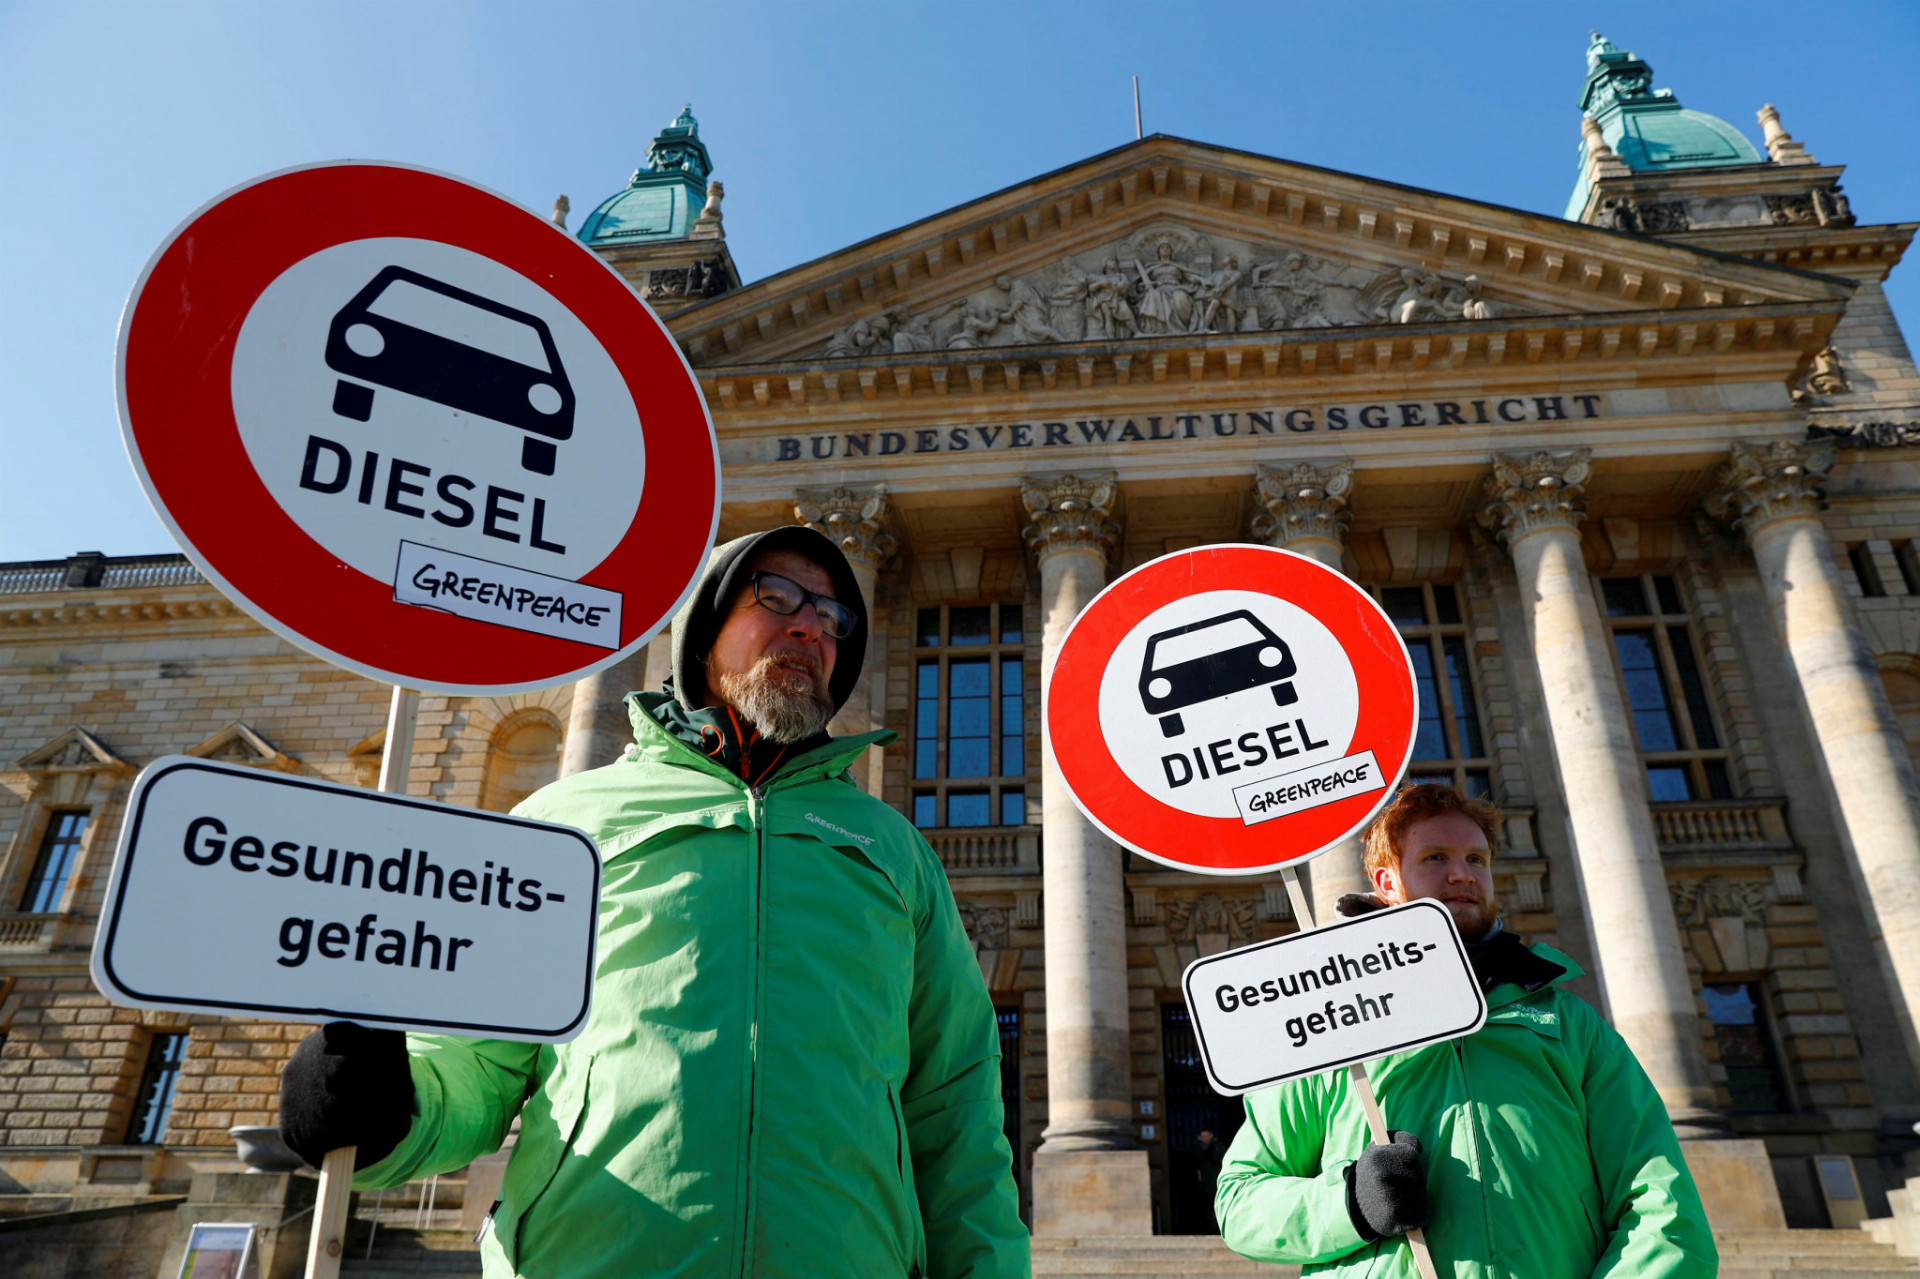 Ekologickí aktivisti Greenpeace protestujú pred federálnym správnym súdom v Nemecku skôr, než rozhodne, či nemecké právo poskytuje právny základ pre mestá, aby zakázali naftové automobily na zníženie znečistenia ovzdušia v Lipsku v Nemecku.